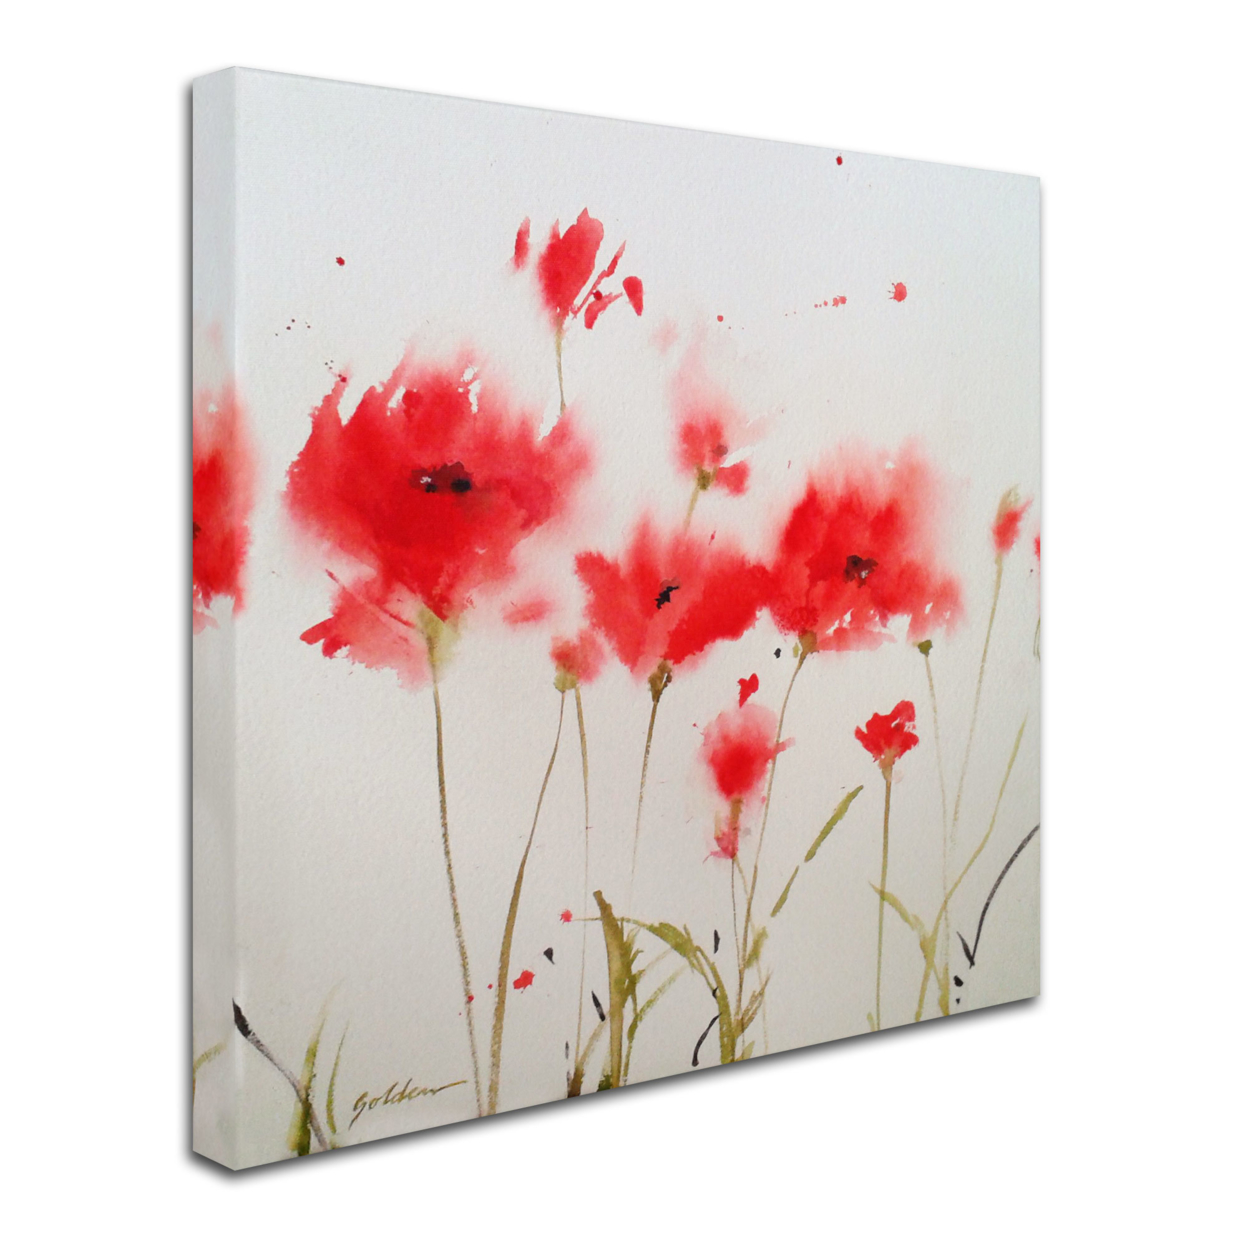 Sheila Golden 'A Poppy Moment' Huge Canvas Art 35 X 35